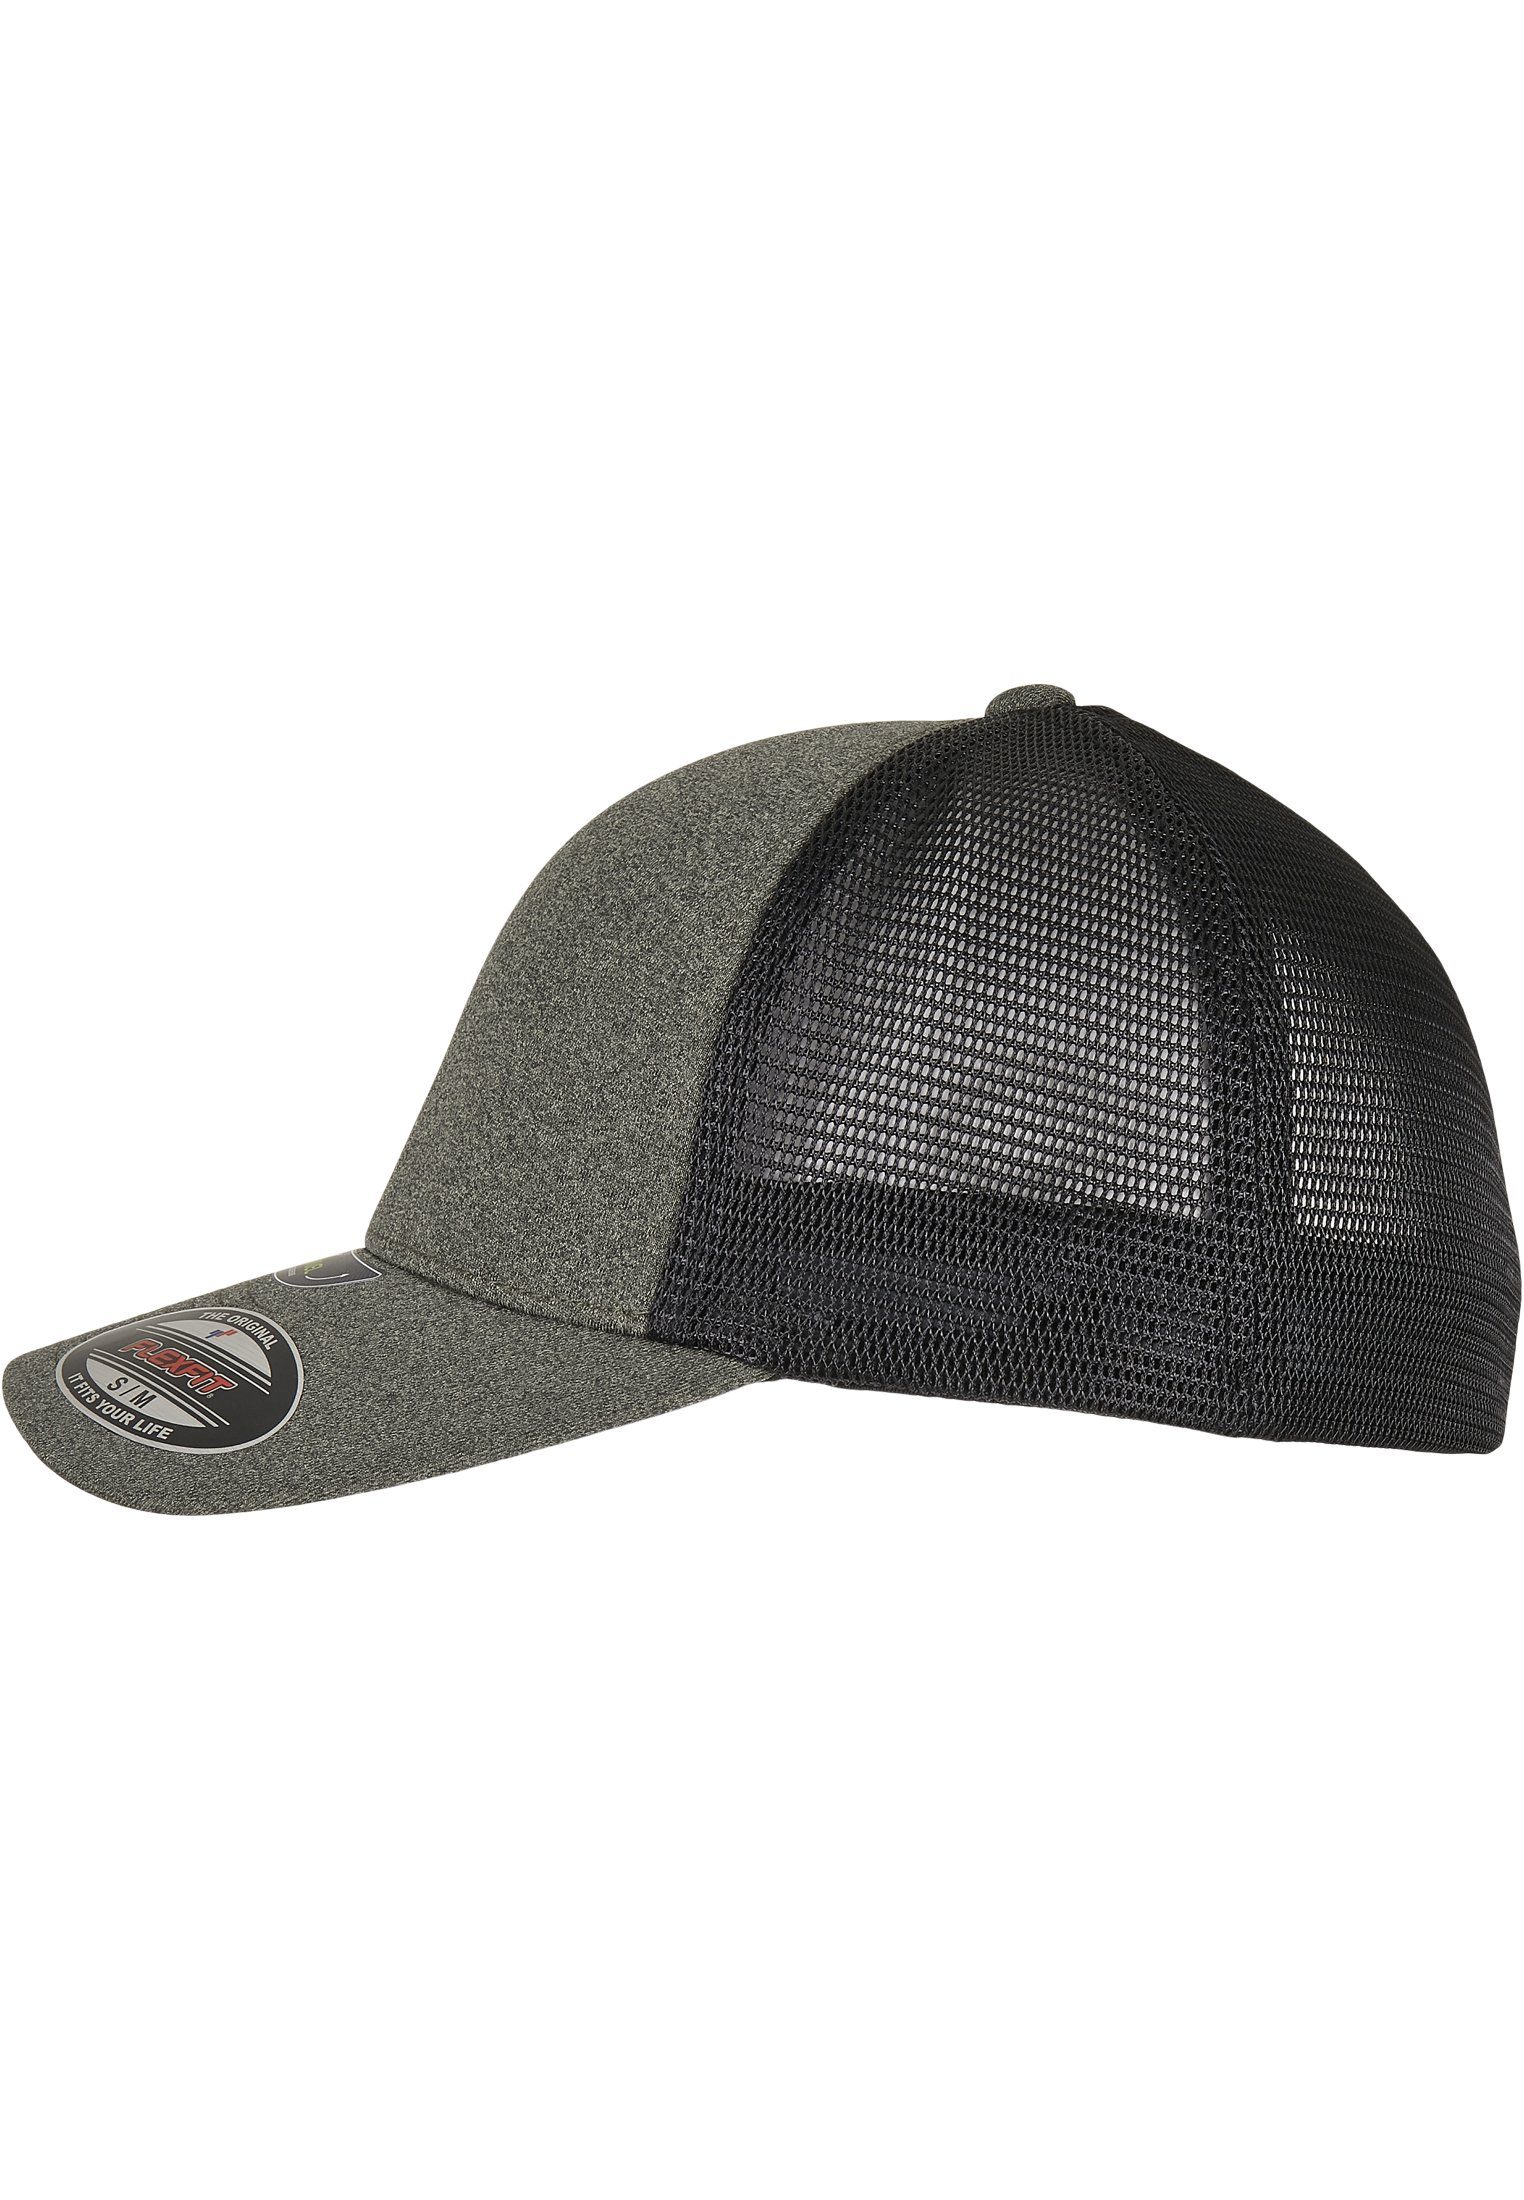 Flexfit Flex Cap Accessoires UNIPANEL™ olive/black FLEXFIT CAP